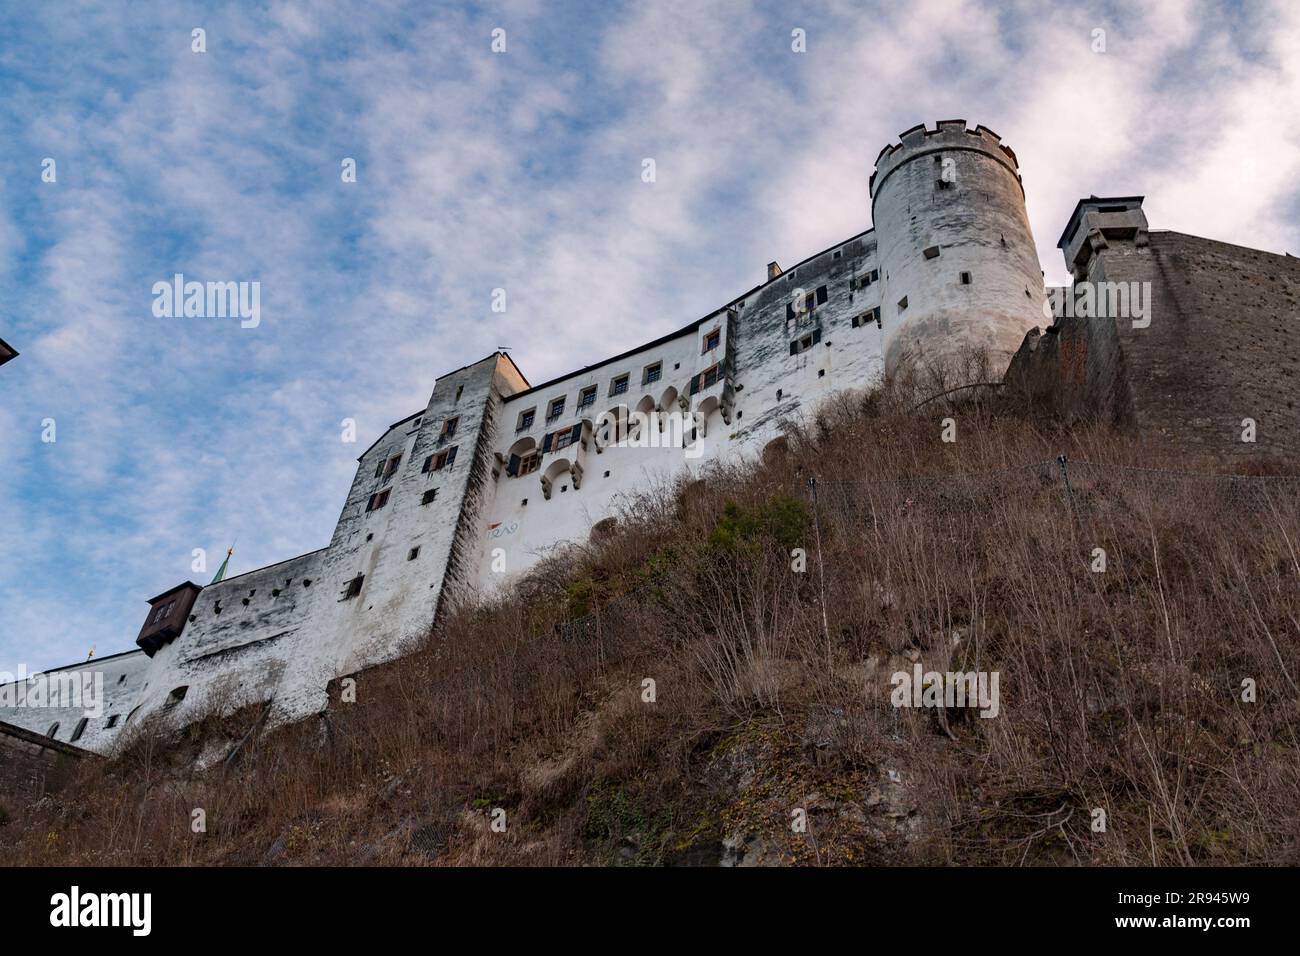 Vue sur la forteresse de Hohensalzburg ou Festung Hohensalzburg, une grande forteresse médiévale située sur une colline surplombant la ville de Salzbourg. Banque D'Images